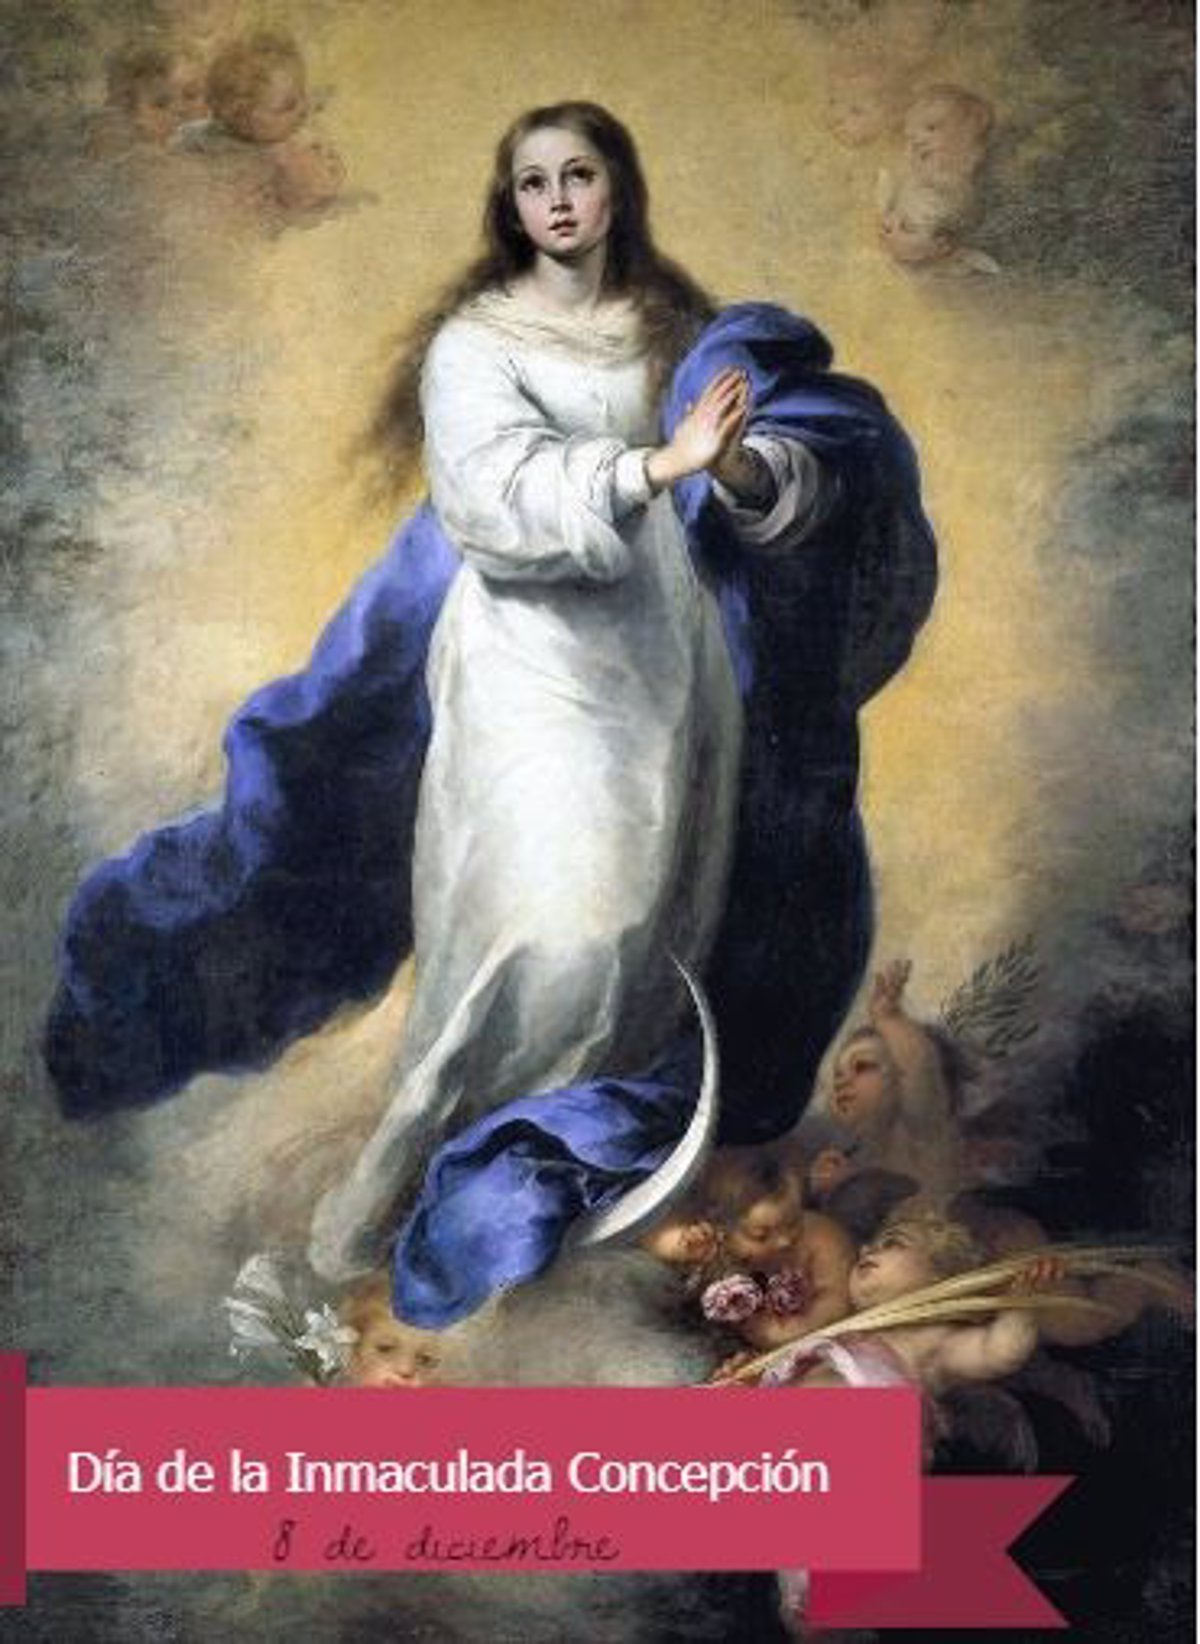 8 de diciembre: Día de la Inmaculada Concepción o Virgen María, ¿cuál es el  motivo de esta celebración?